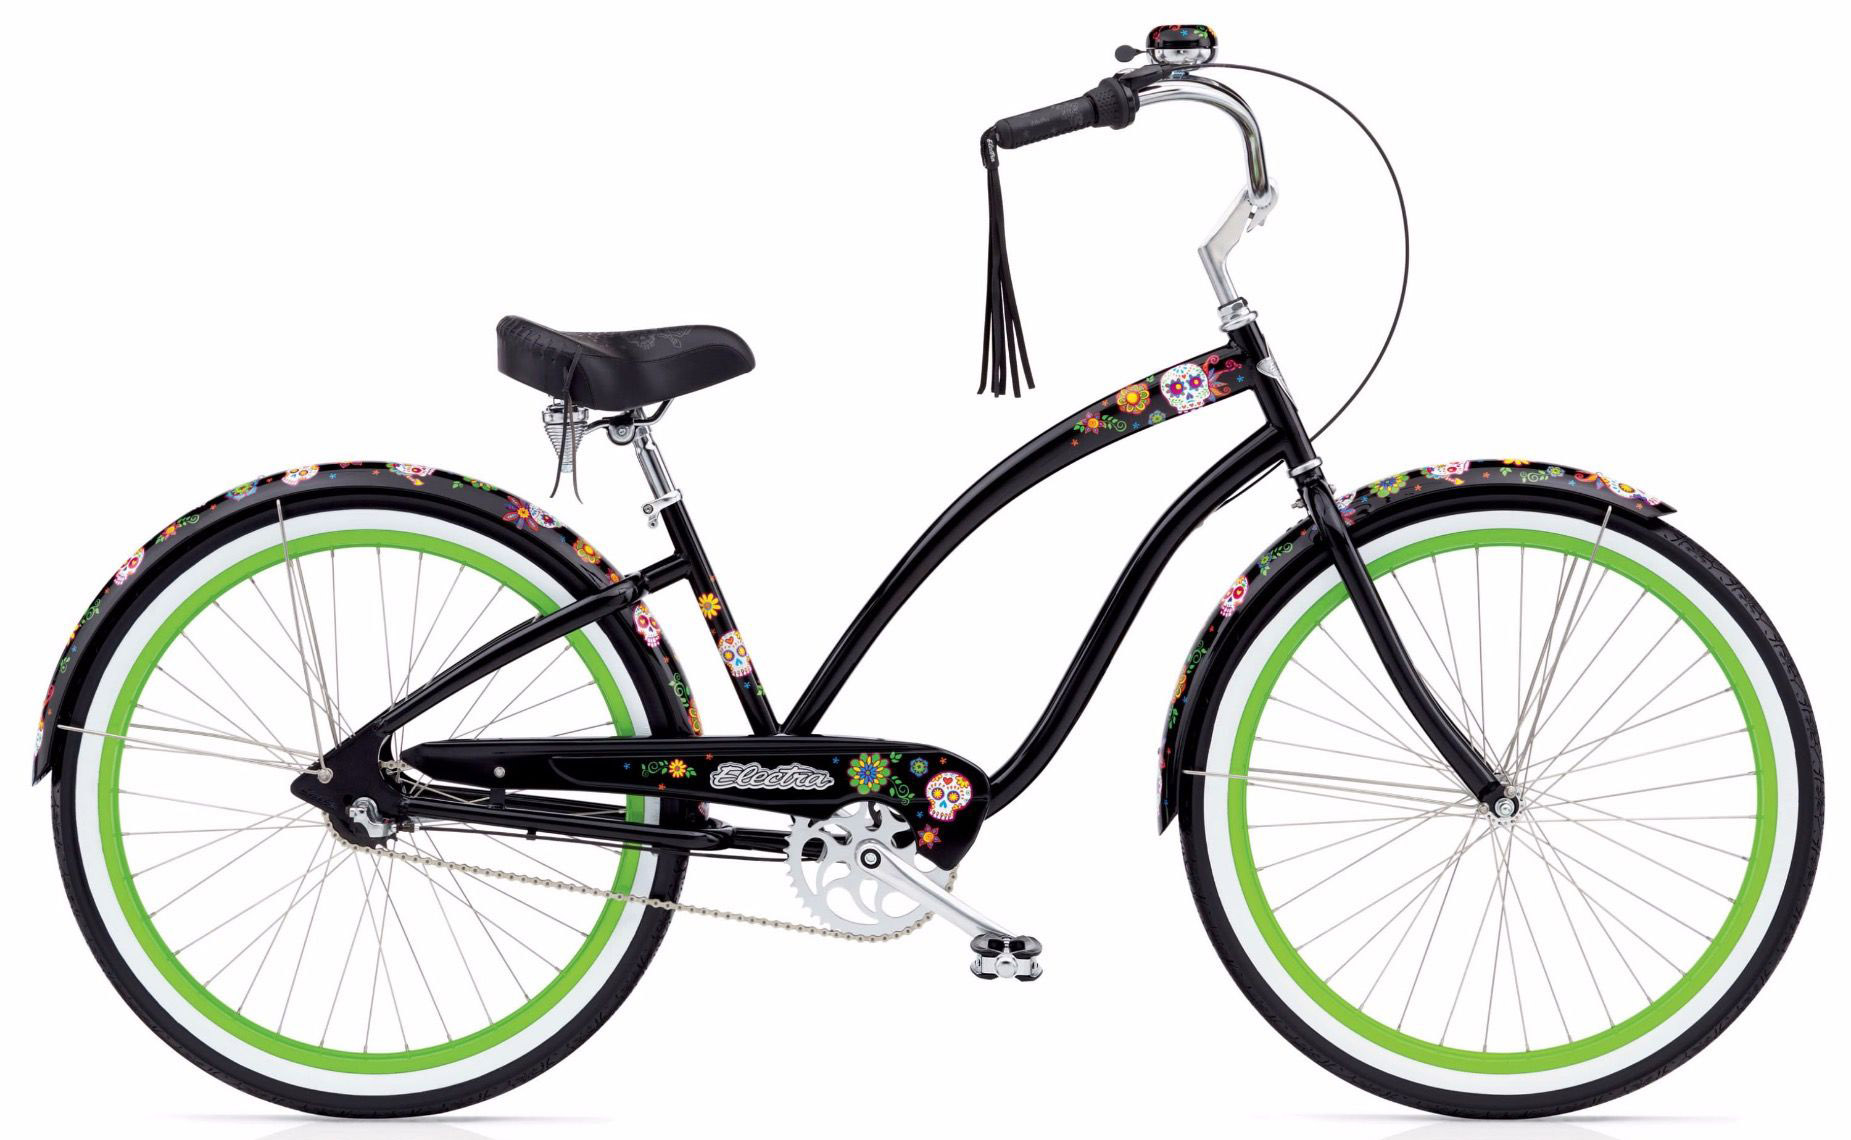  Велосипед Electra Cruiser Sugar Skulls 7i 2020